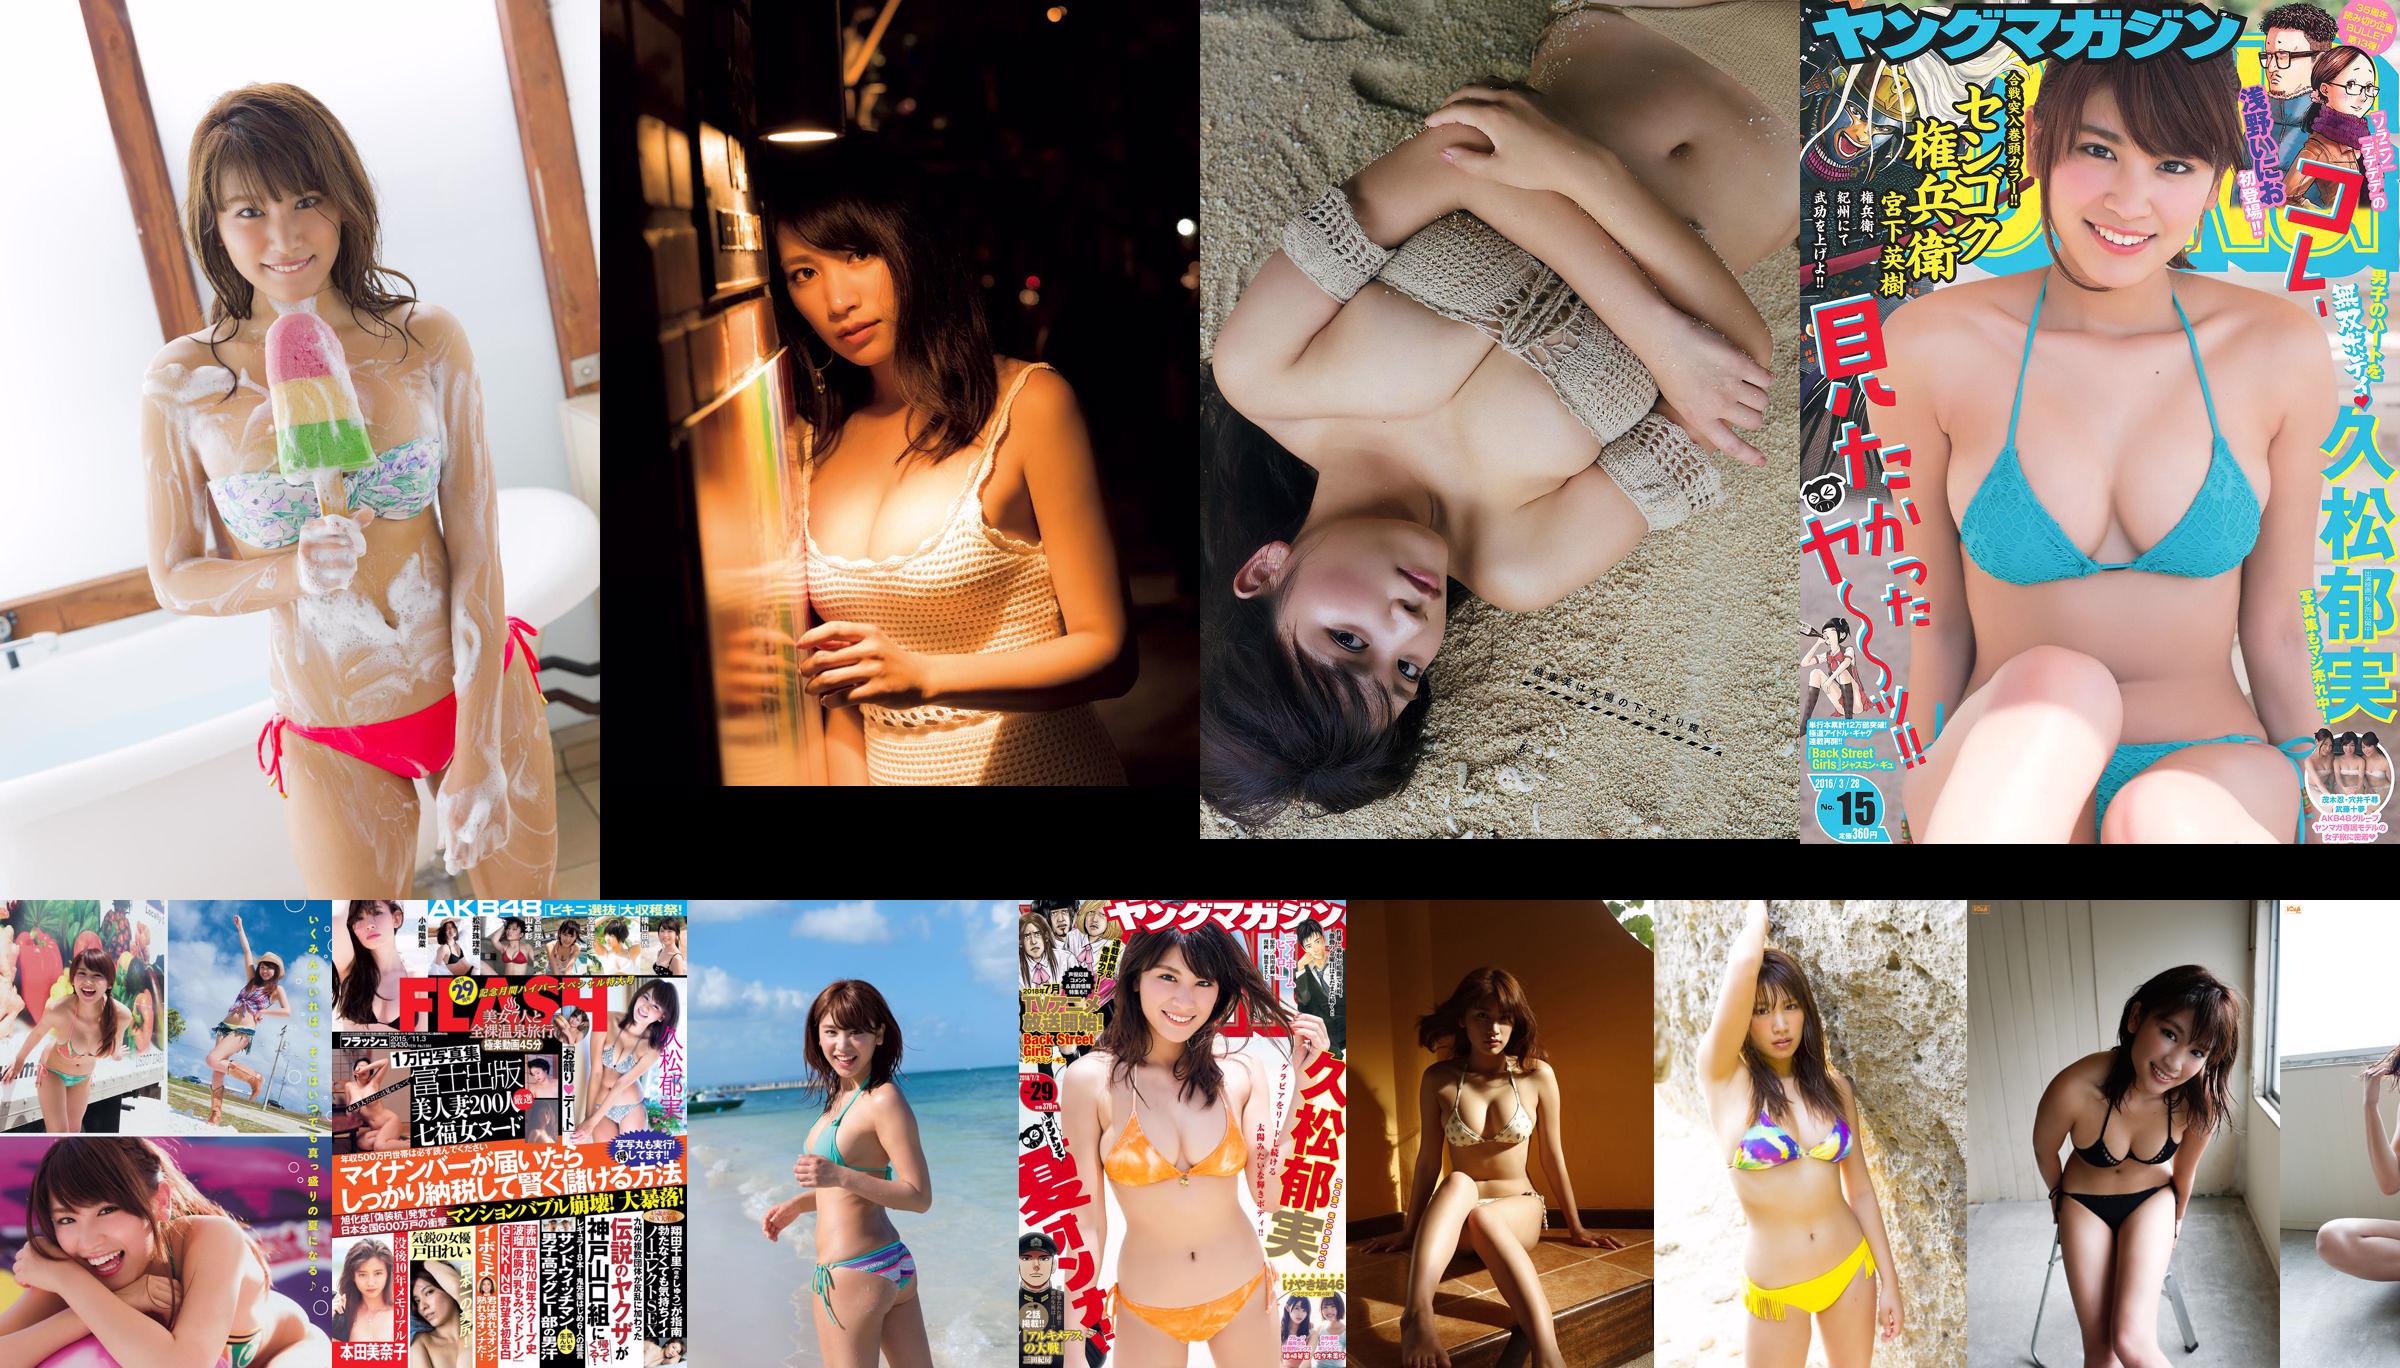 [Young Magazine] Ikumi Hisamatsu 2016 Nr. 21-22 Foto No.051b60 Seite 1